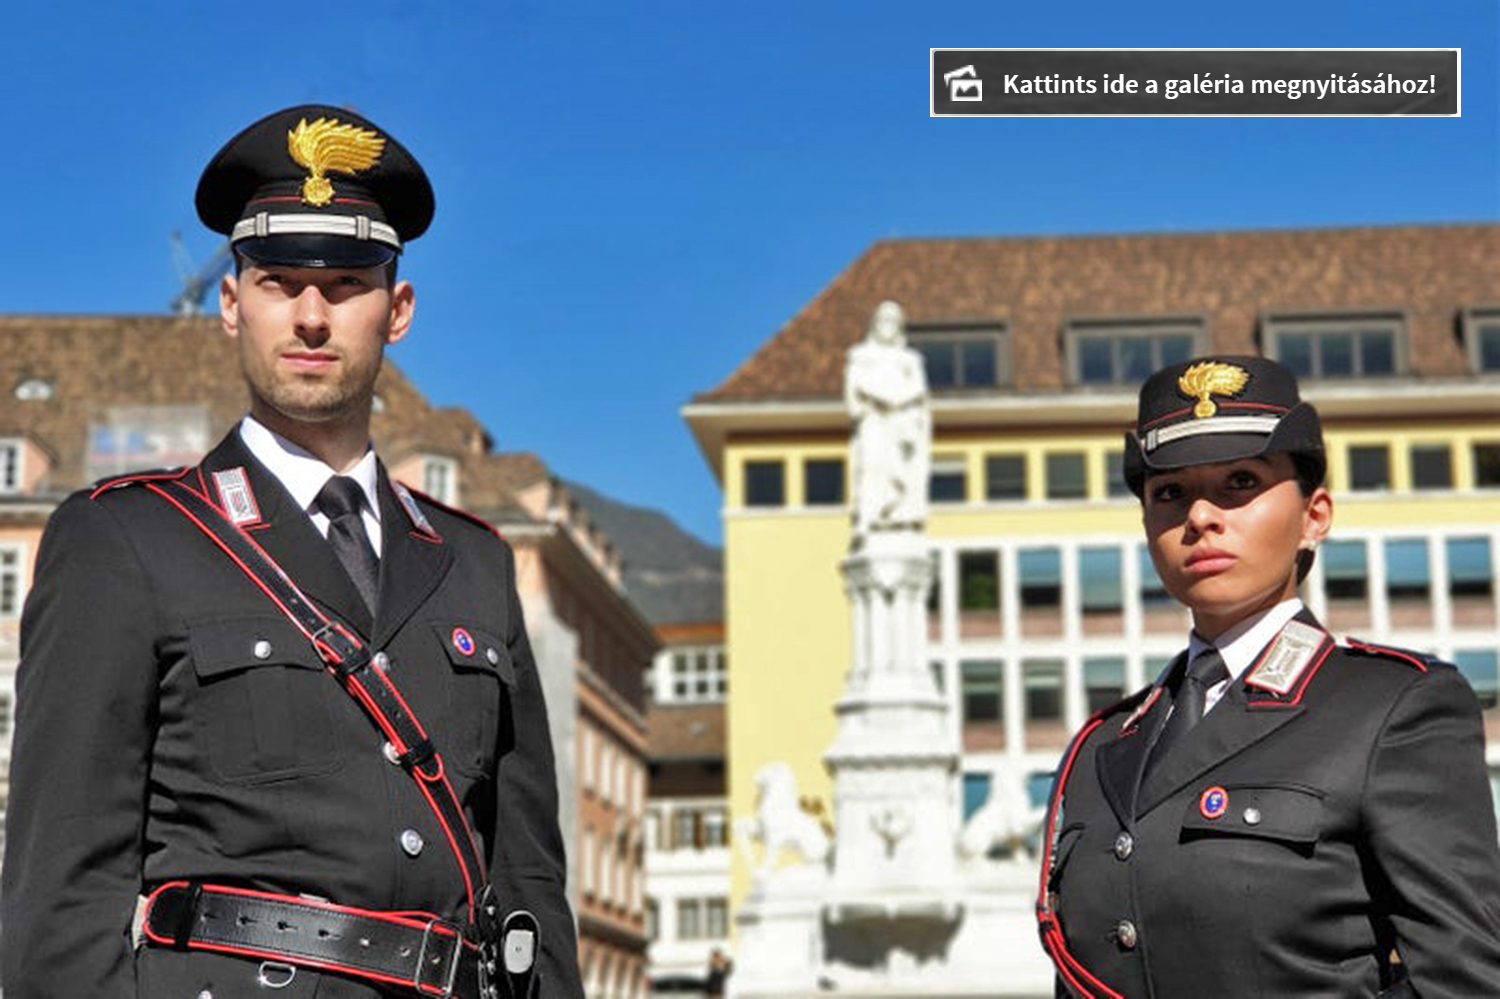 03_carabinieri_police.jpg